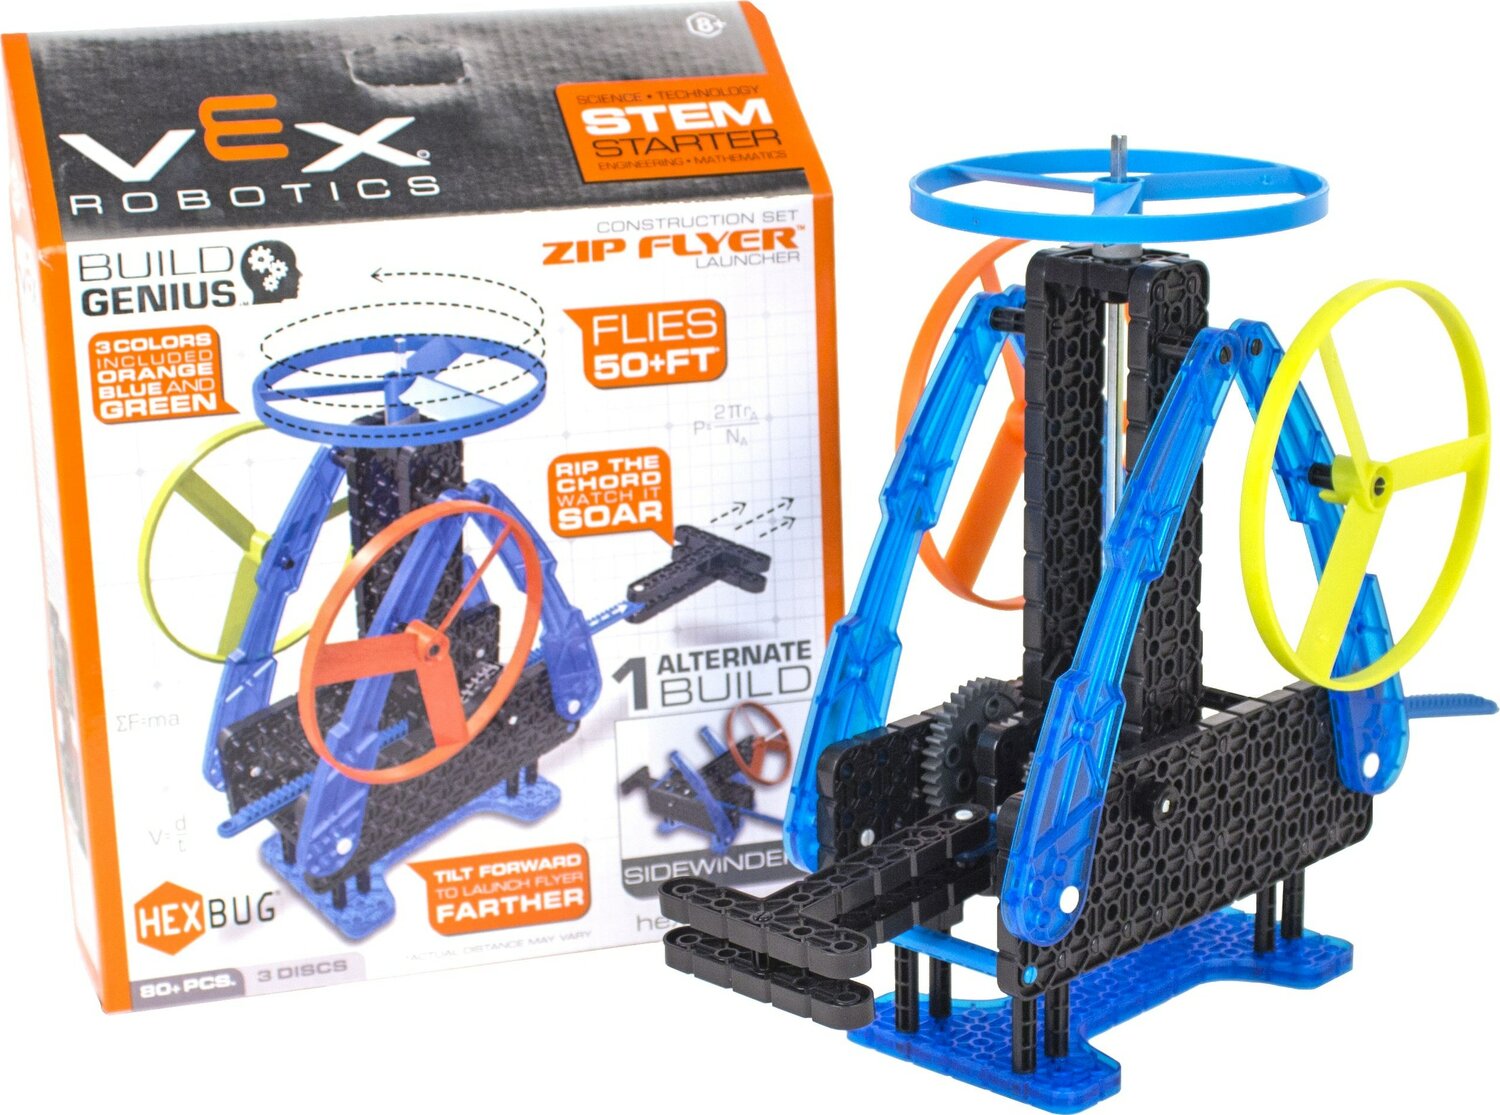 Vex Robotics Zip Flyer Laucher Construction Kit by HEXBUG for sale online 